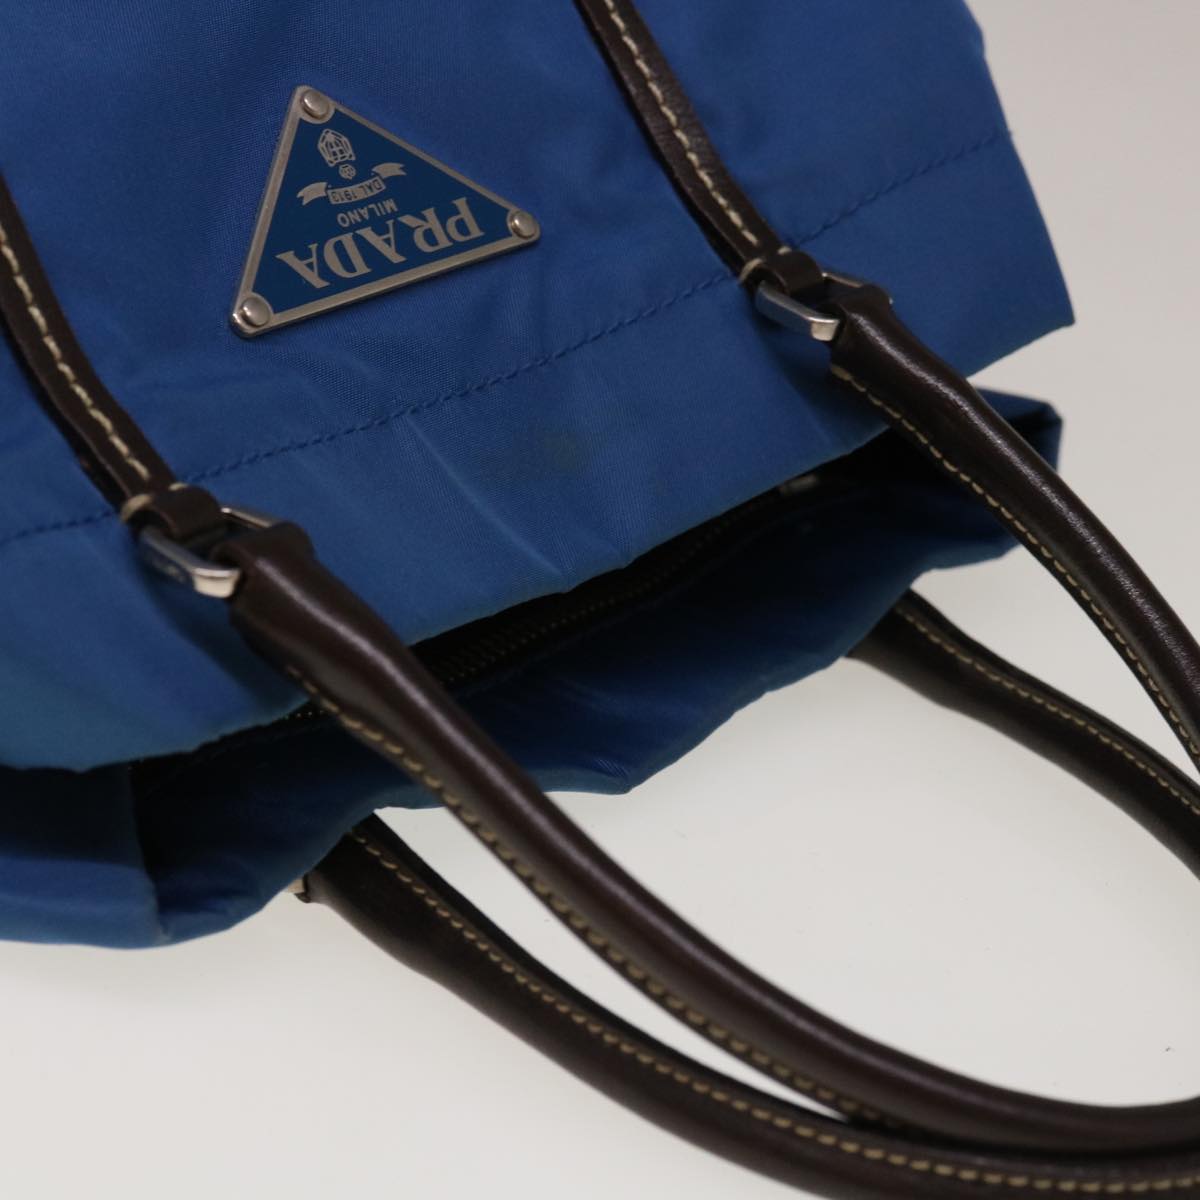 PRADA Hand Bag Nylon Blue Auth 65374